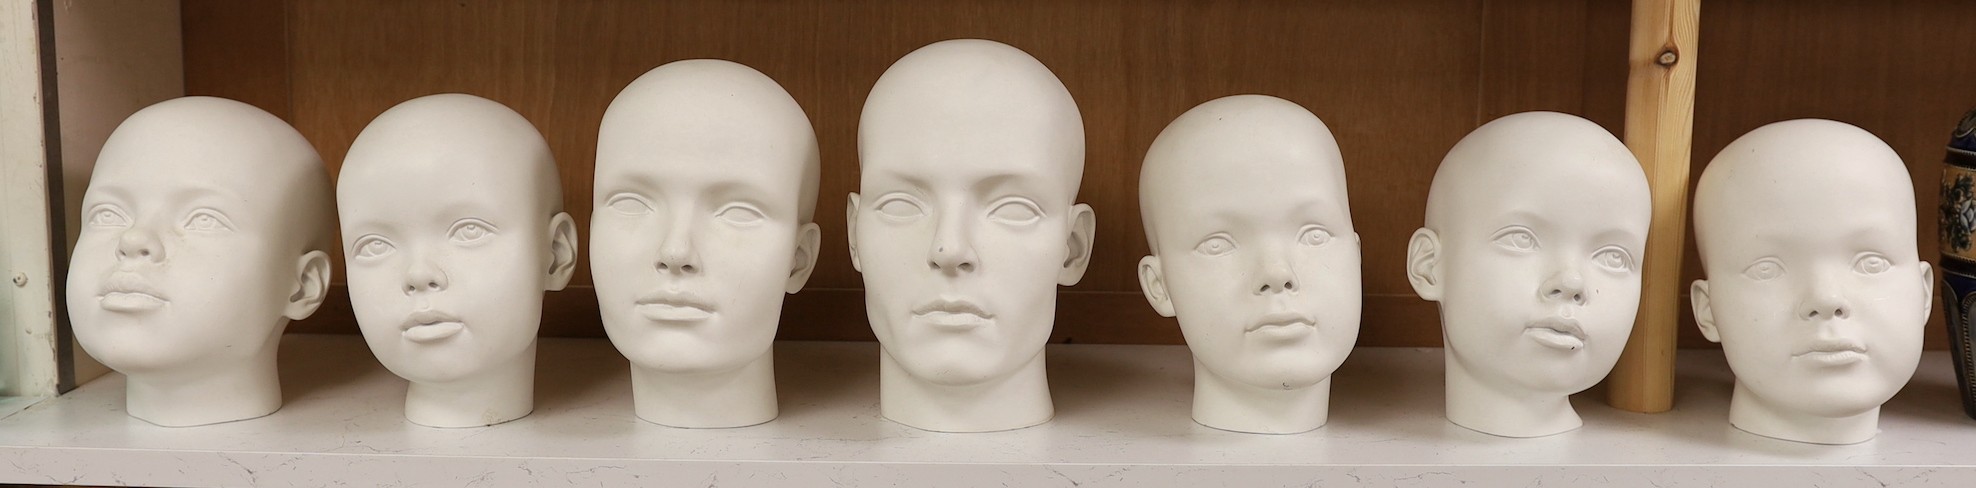 A set of seven fibreglass mannequin heads, largest 23cms high